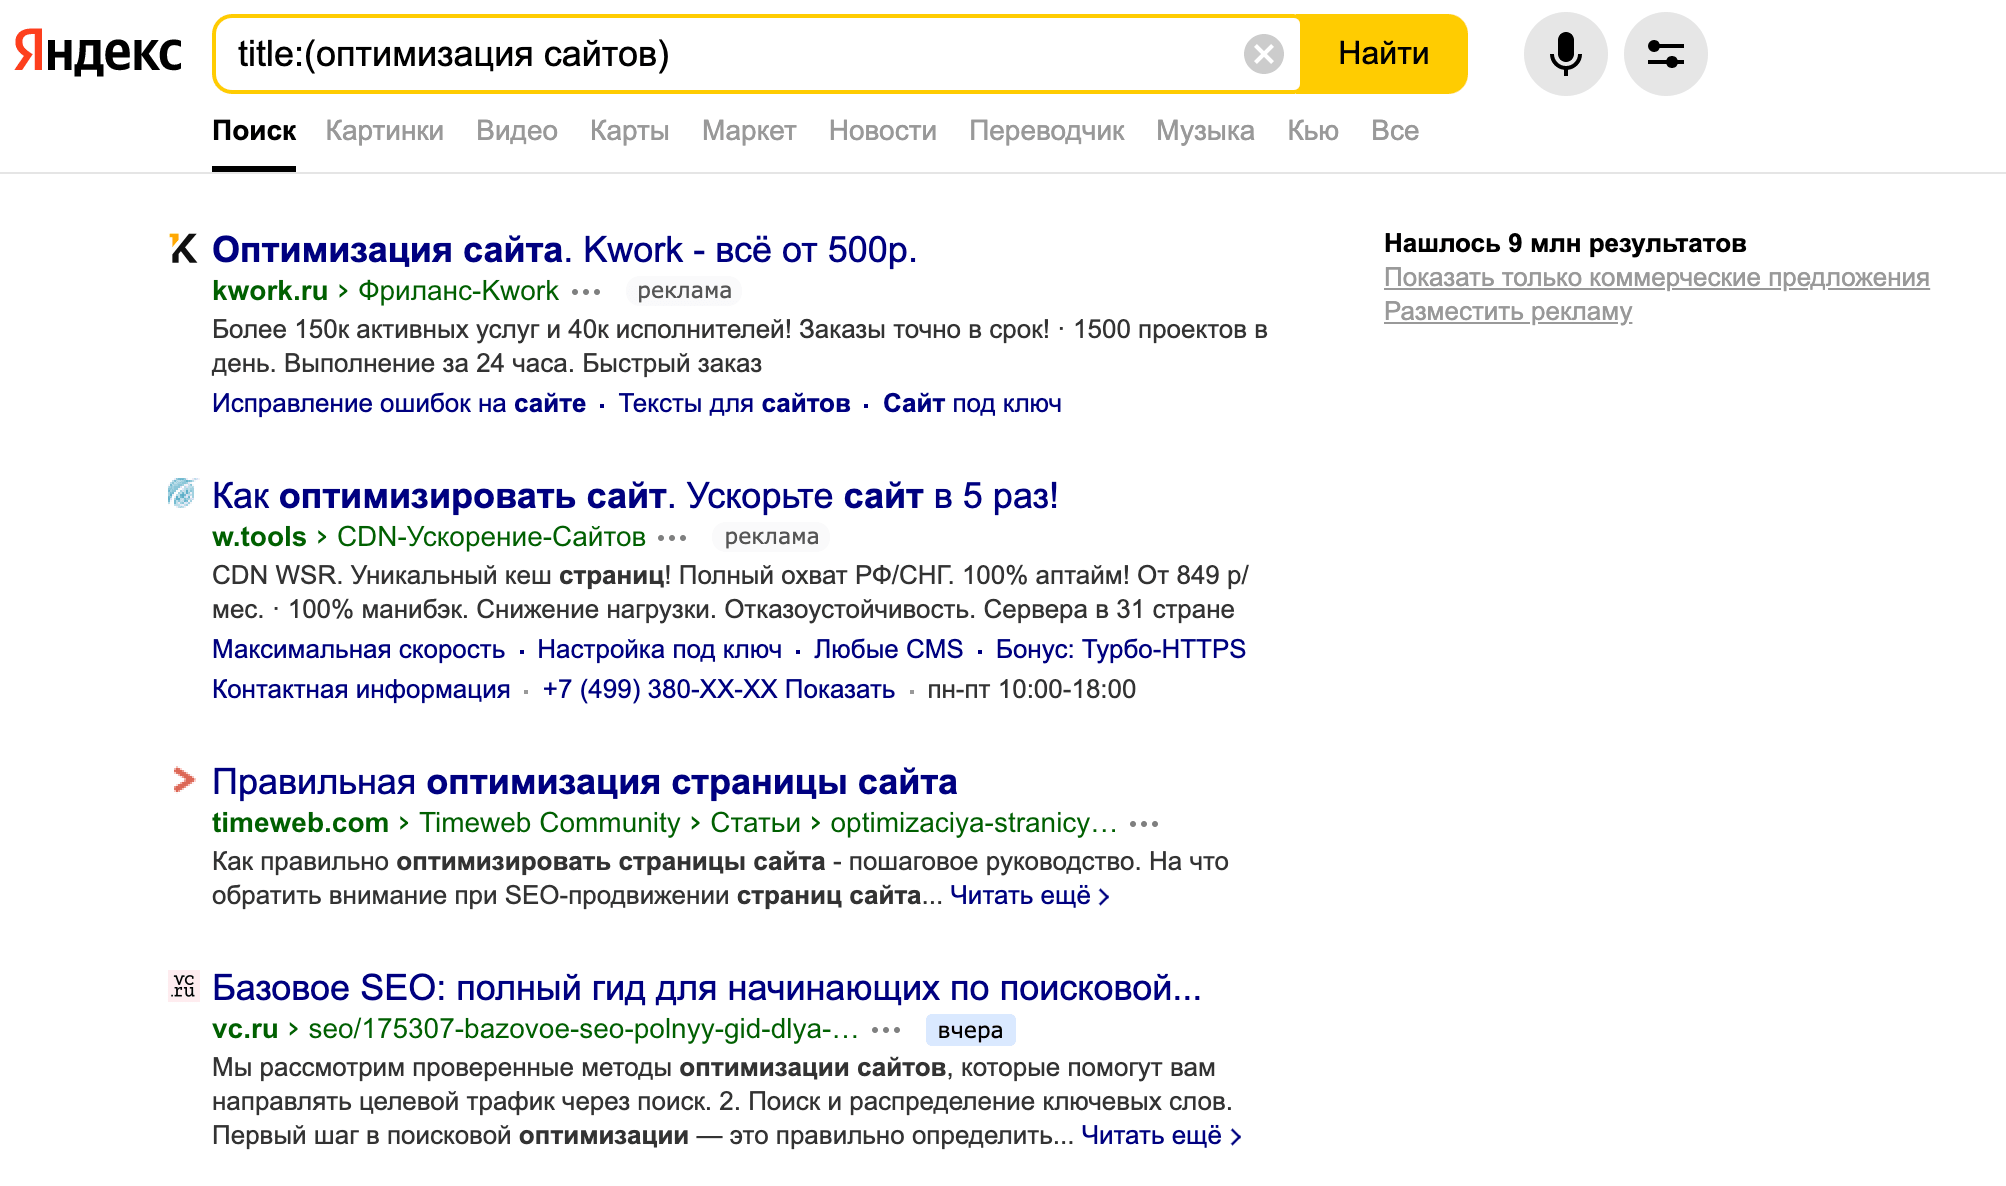 Комбинация операторов Яндекса title: и ( )